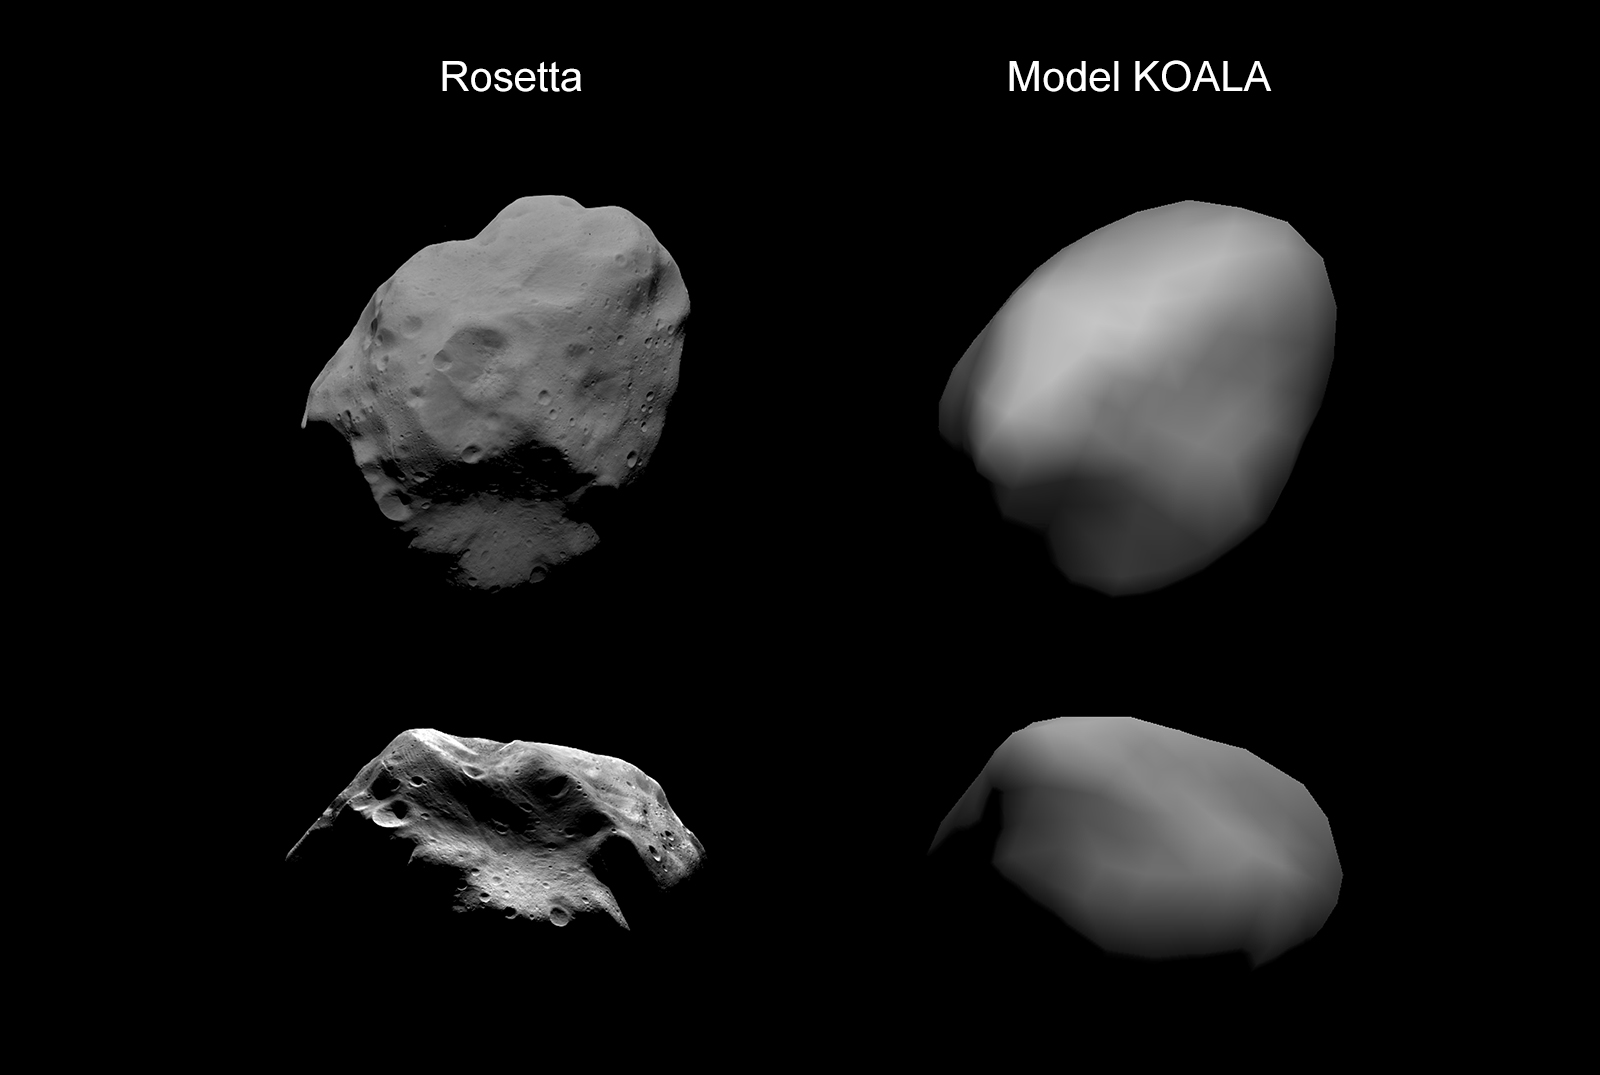 Planetoida (21) Lutetia – w obserwacji bezpośredniej sondy kosmicznej Rosetta (po lewej) oraz jako efekt modelowania bryły planetoidy w oparciu o krzywą blasku (konkretnie: użyty został model o nazwie KOALA). Model przewidział orientację osi obrotu planetoidy z dokładnością do 2 stopni, rozmiar obiektu z dokładnością do 2% (~2 km; Lutetia ma średnicę rzędu 100 km), a objętość bryły z 10% niepewnością. Szczegóły: https://doi.org/10.1016/j.pss.2011.12.018. Fot.: ESA.